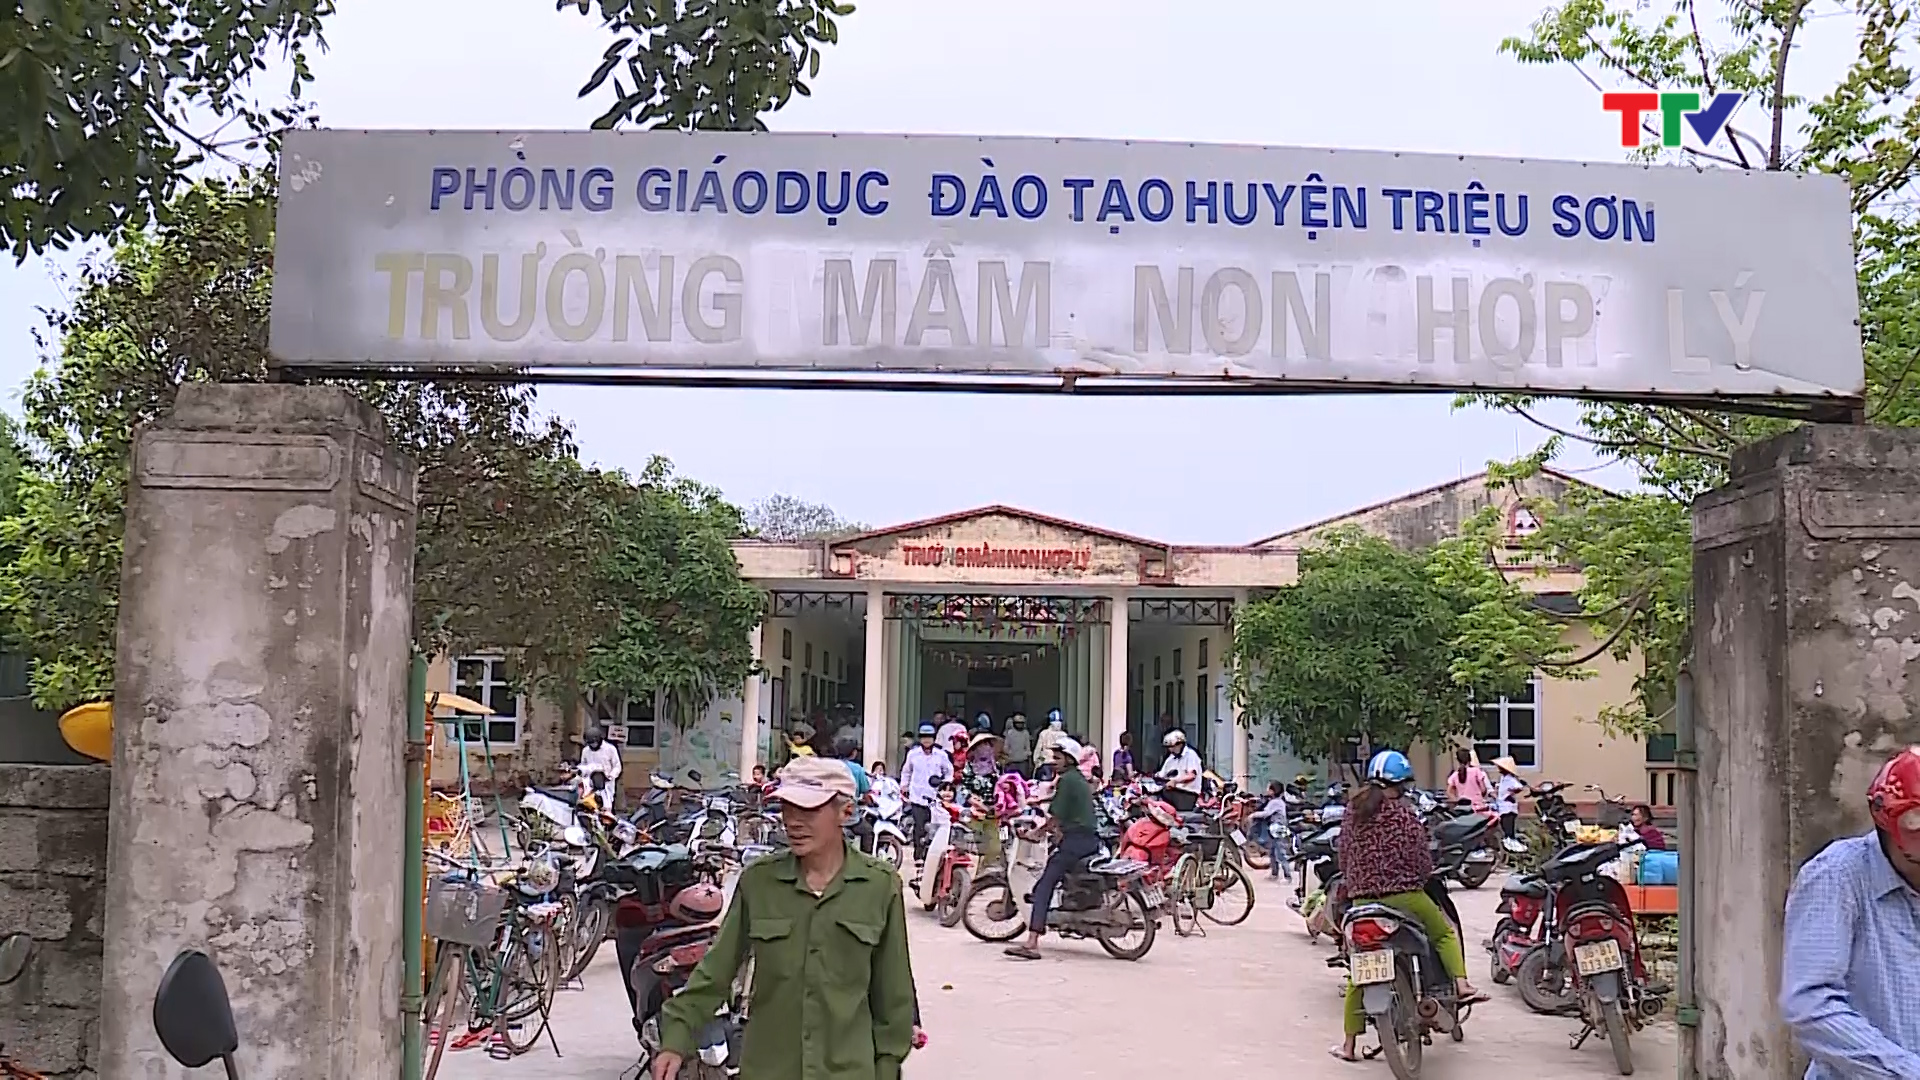 Trường mầm non Hợp Lý, huyện Triệu Sơn có 318 học sinh với 12 nhóm lớp nhưng chỉ có 8 phòng học